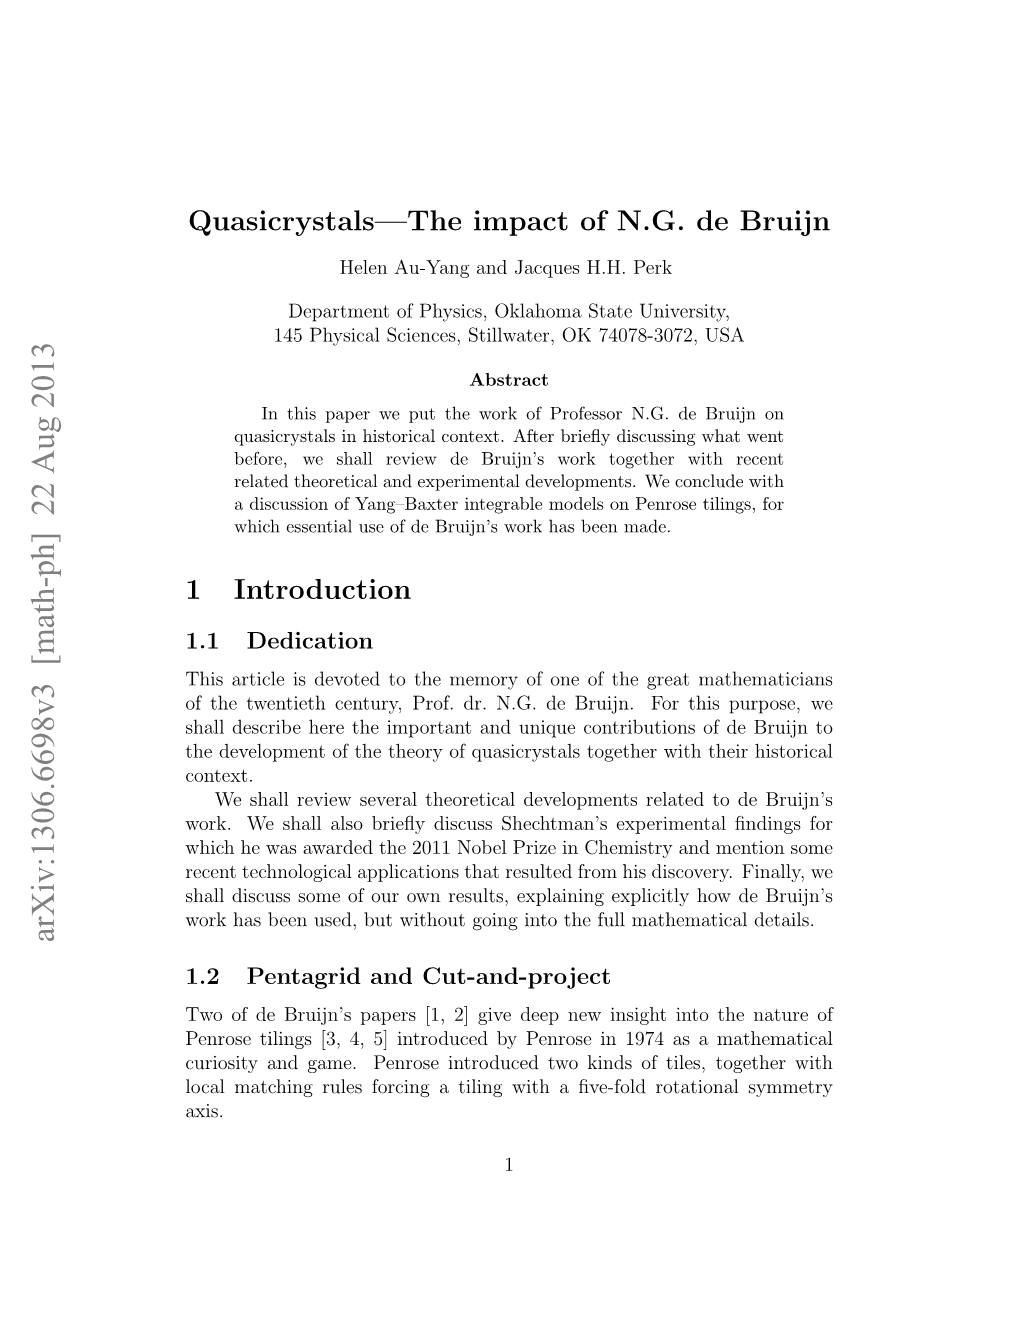 Quasicrystals—The Impact of NG De Bruijn